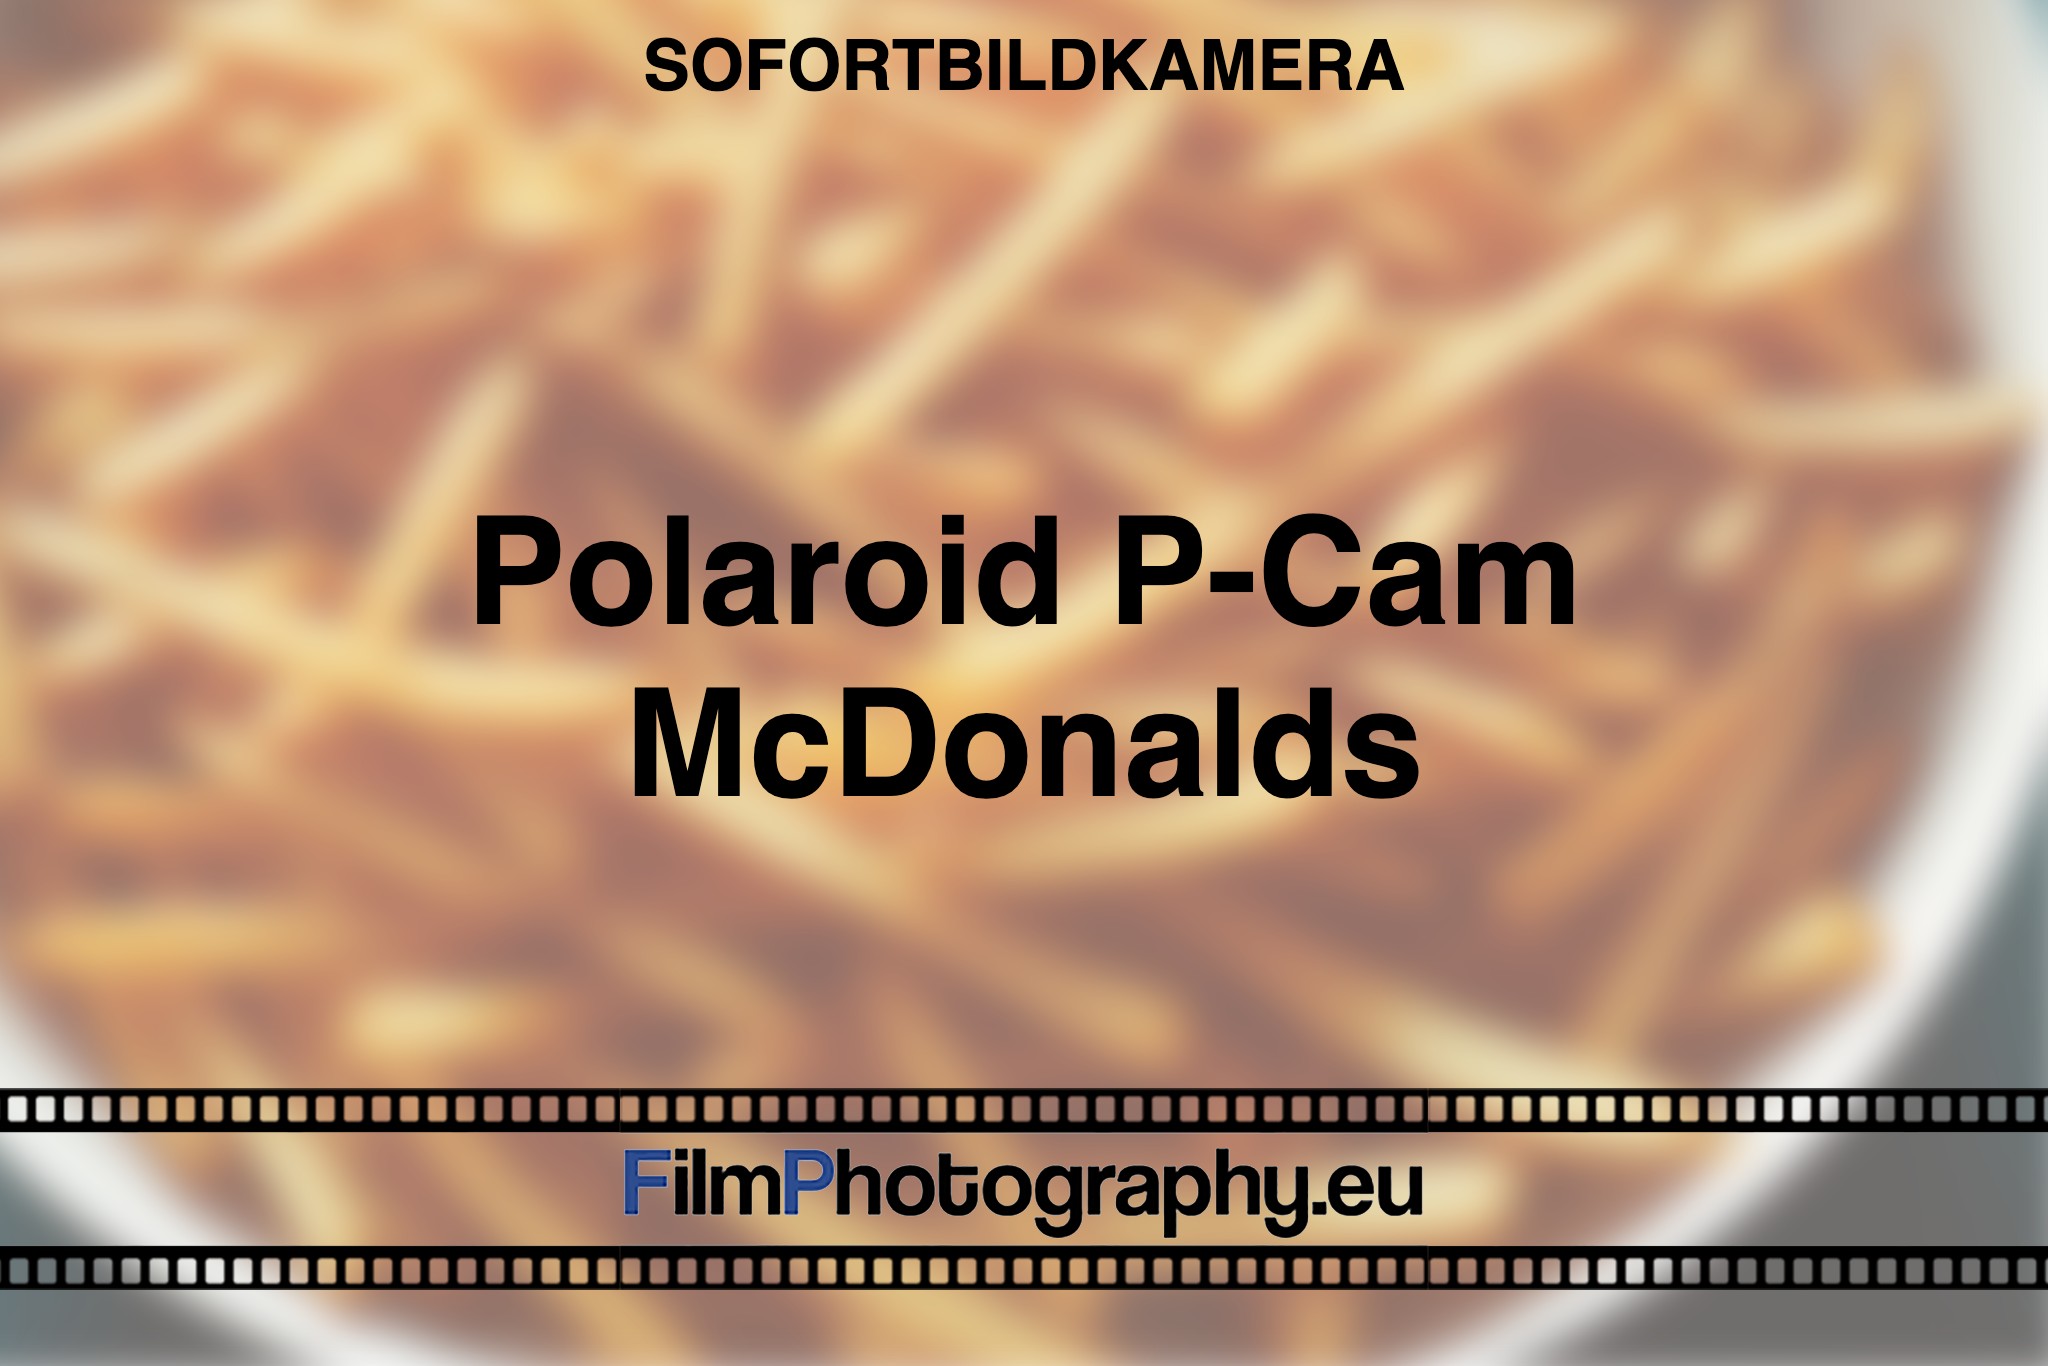 polaroid-p-cam-mcdonalds-sofortbildkamera-fp-bnv